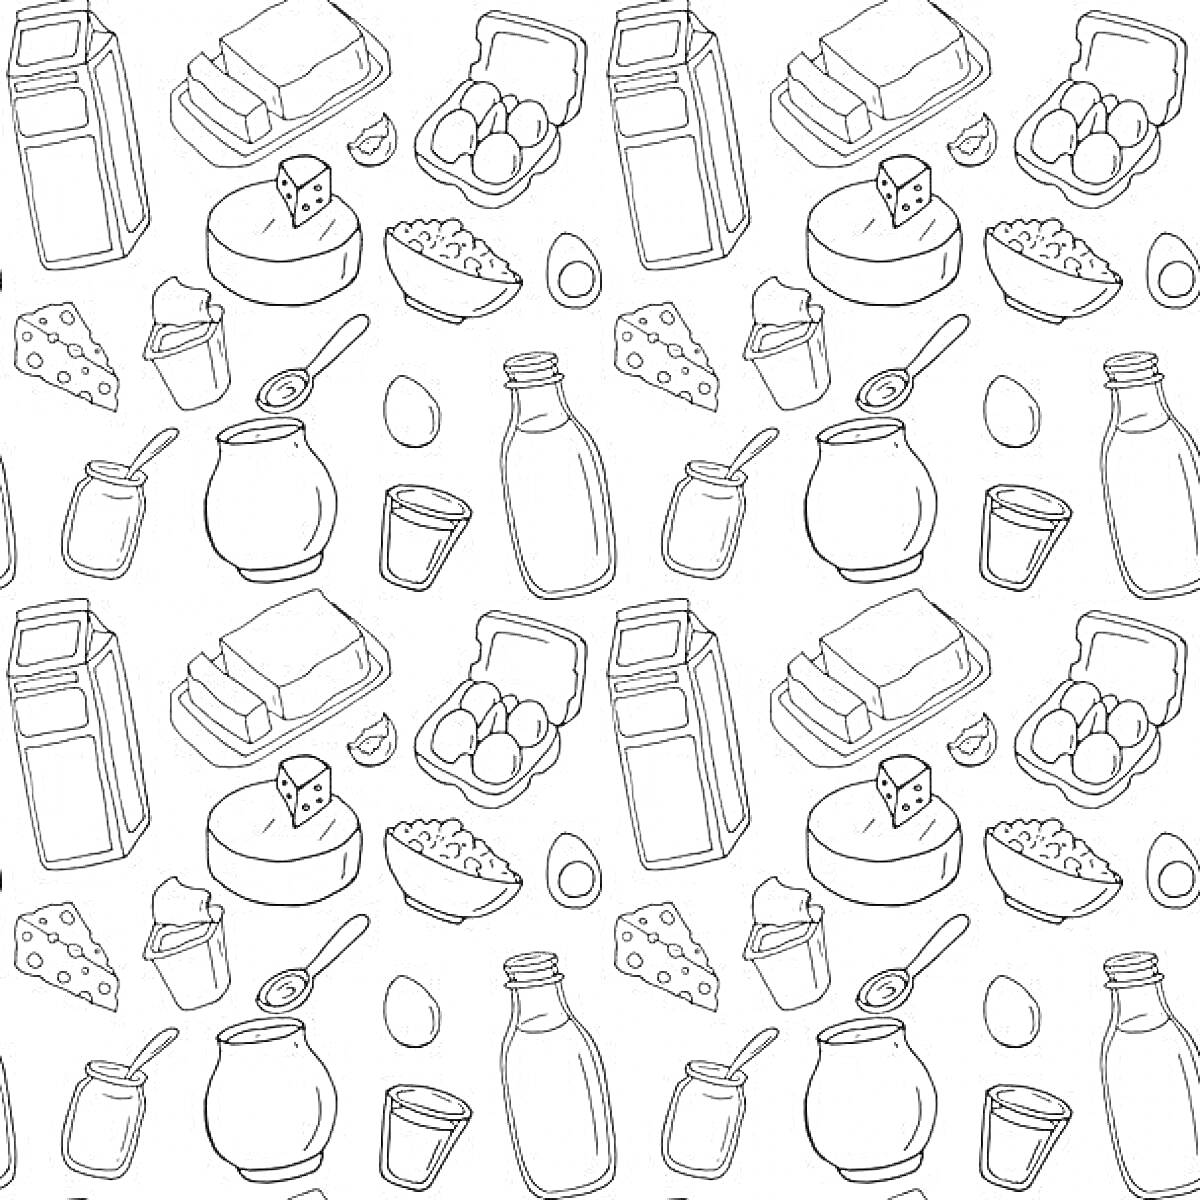 Молочные продукты и яйца - коробка молока, кефир или йогурт в банке, стакан молока, кусочки сыра, упаковка яиц, масло в упаковке, стакан с творогом, бутылка молока